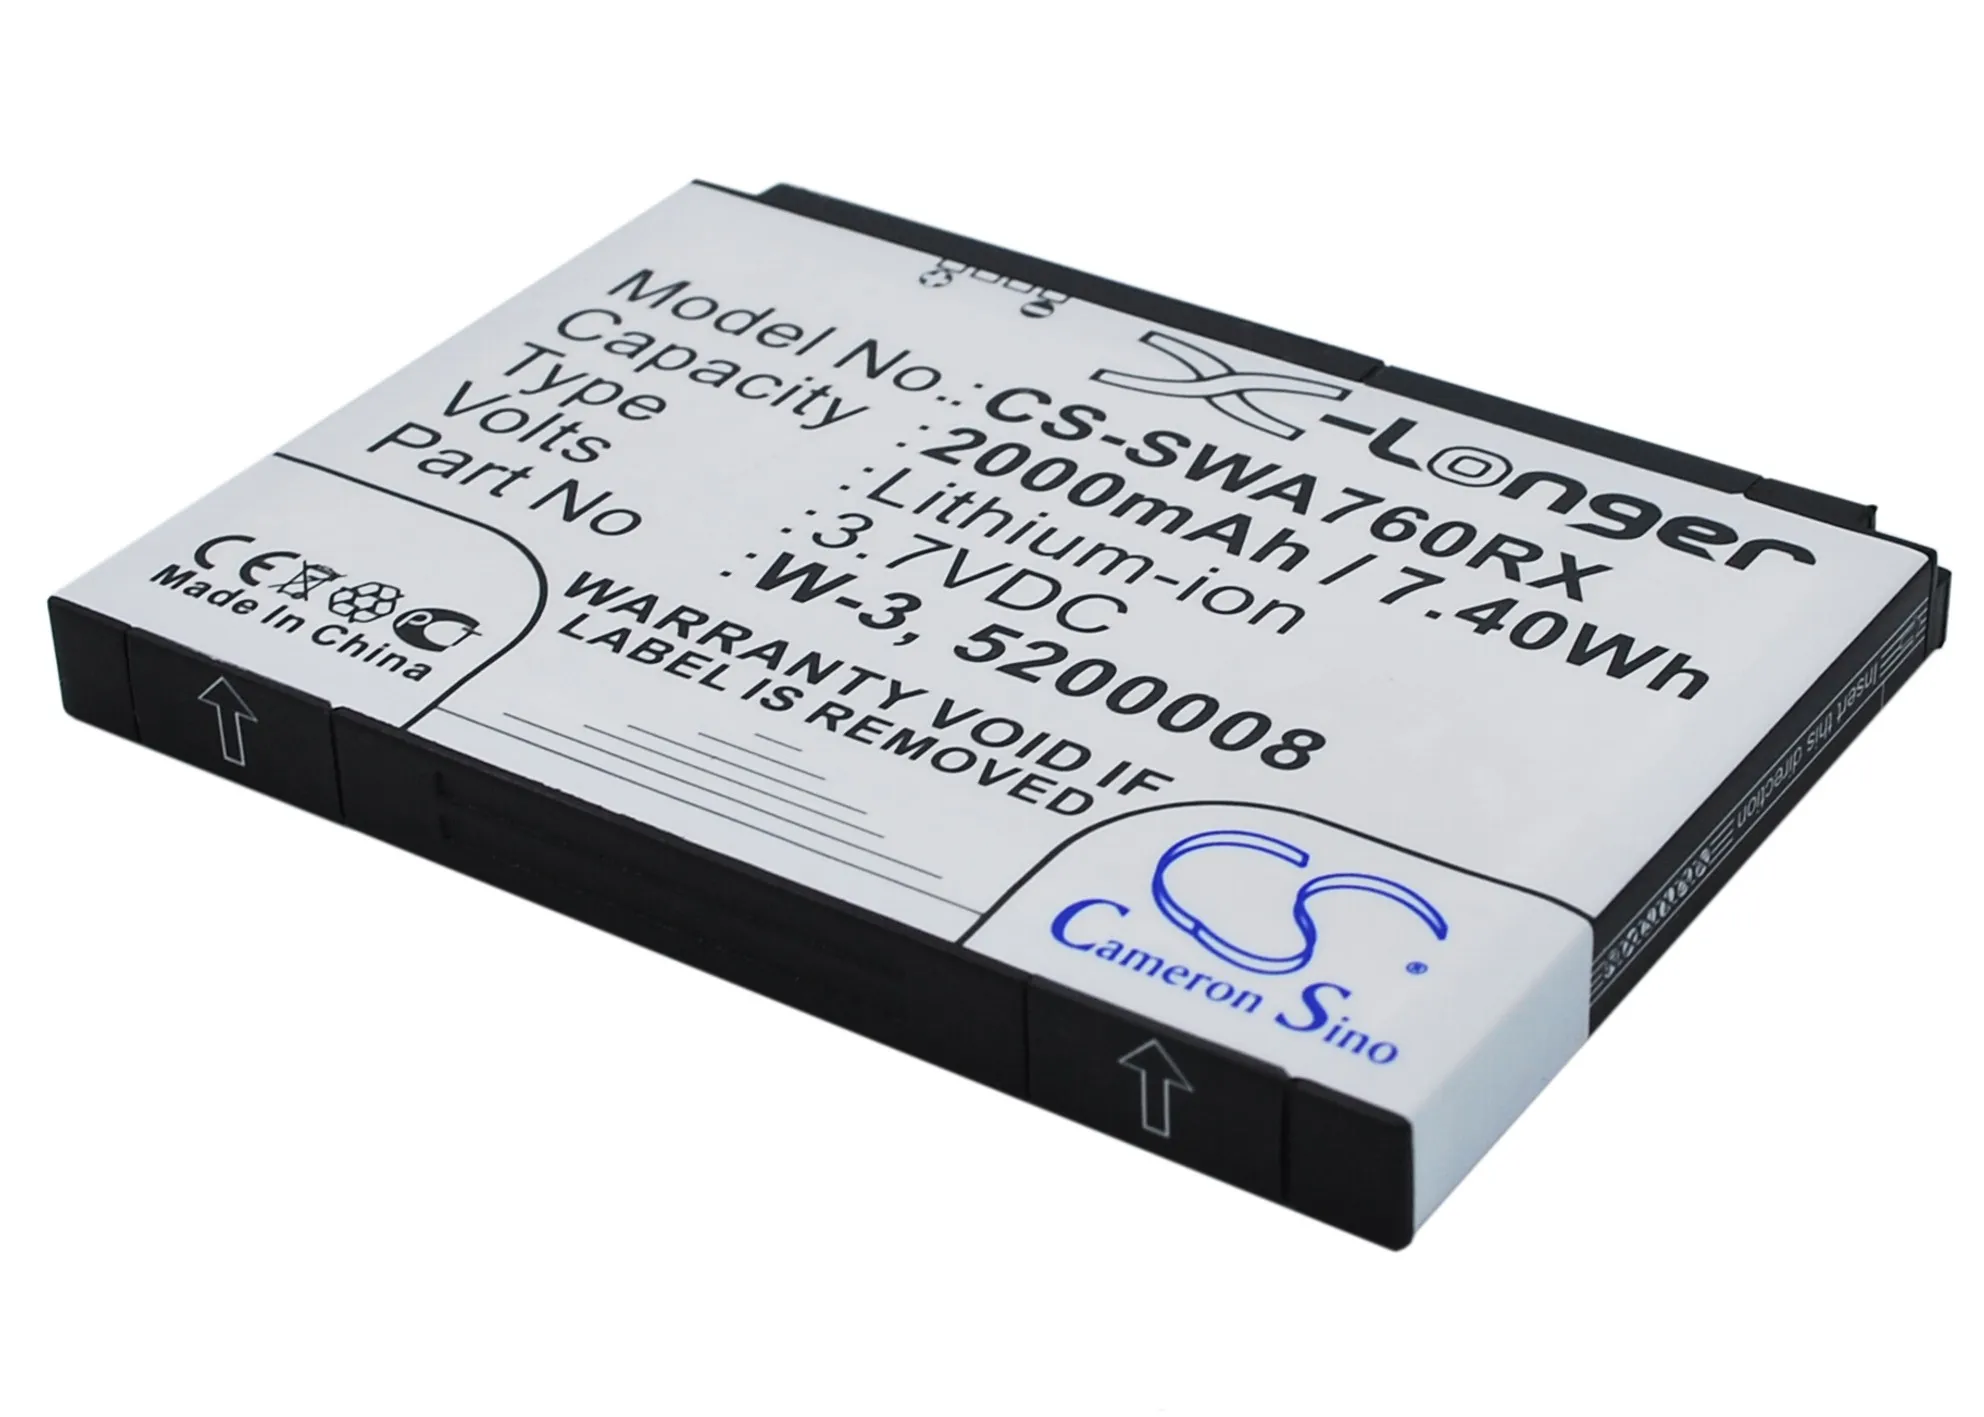 

CS Hotspot Battery for Sierra Wireless Aircard 762s 760s 760 785s 63s Wi-Fi 4G FC80 Plus Fits 5200008 W-3 2000mAh/7.40Wh Li-ion